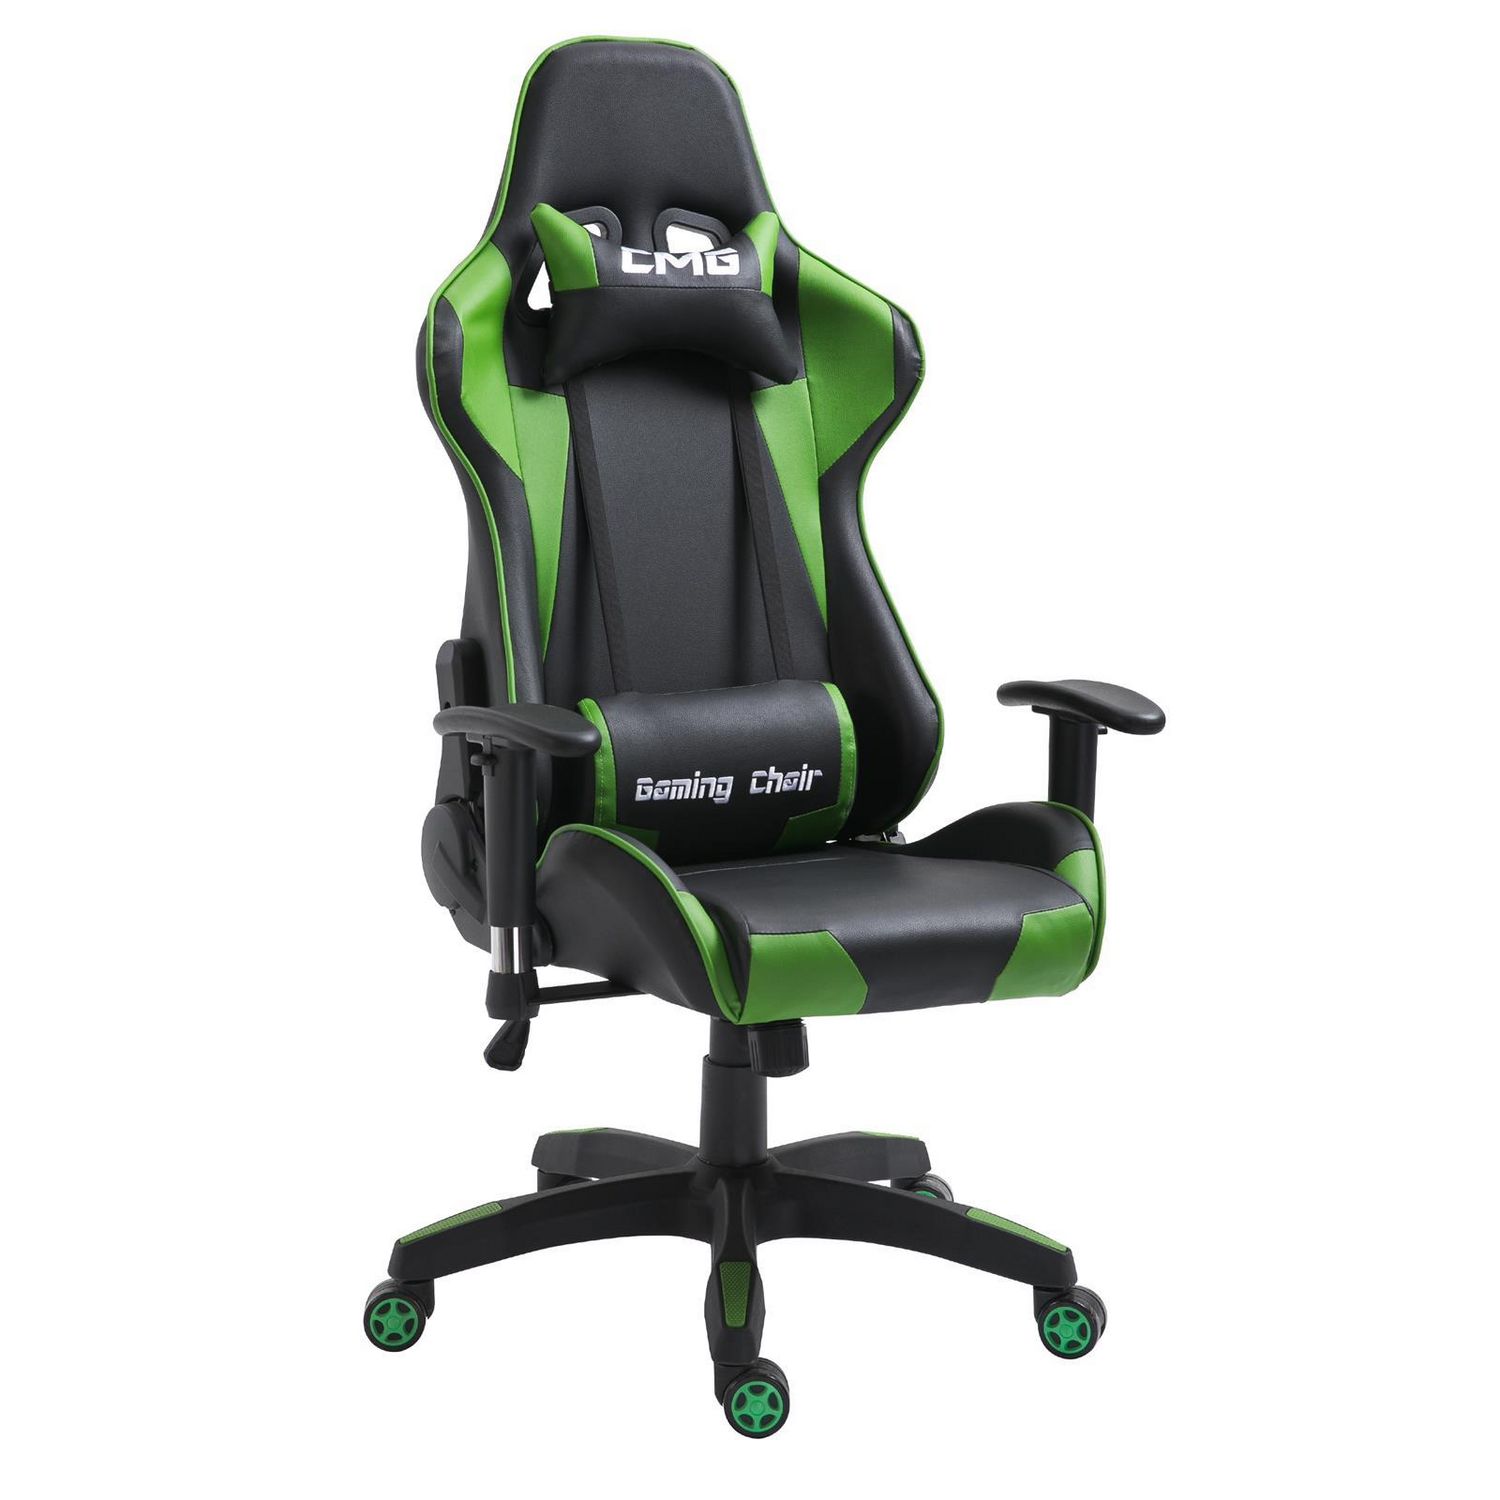 IDIMEX Chaise de bureau GAMING fauteuil ergonomique avec coussins, siège  style racing racer gamer chair, revêtement synthétique noir/vert pas cher 